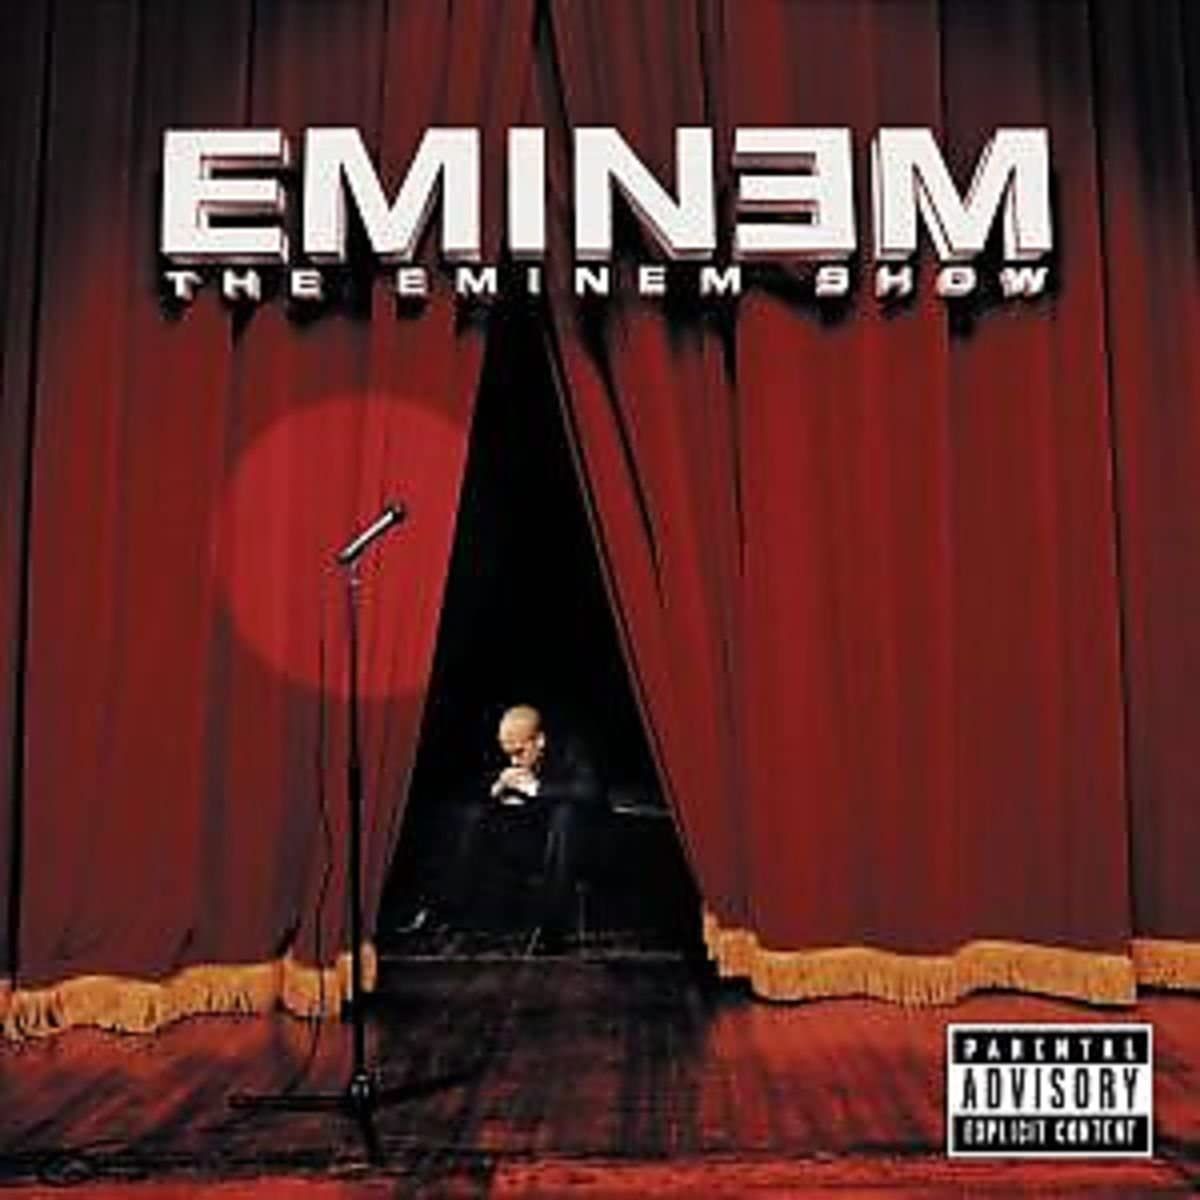 Album cover of "Eminem - The Eminem Show"